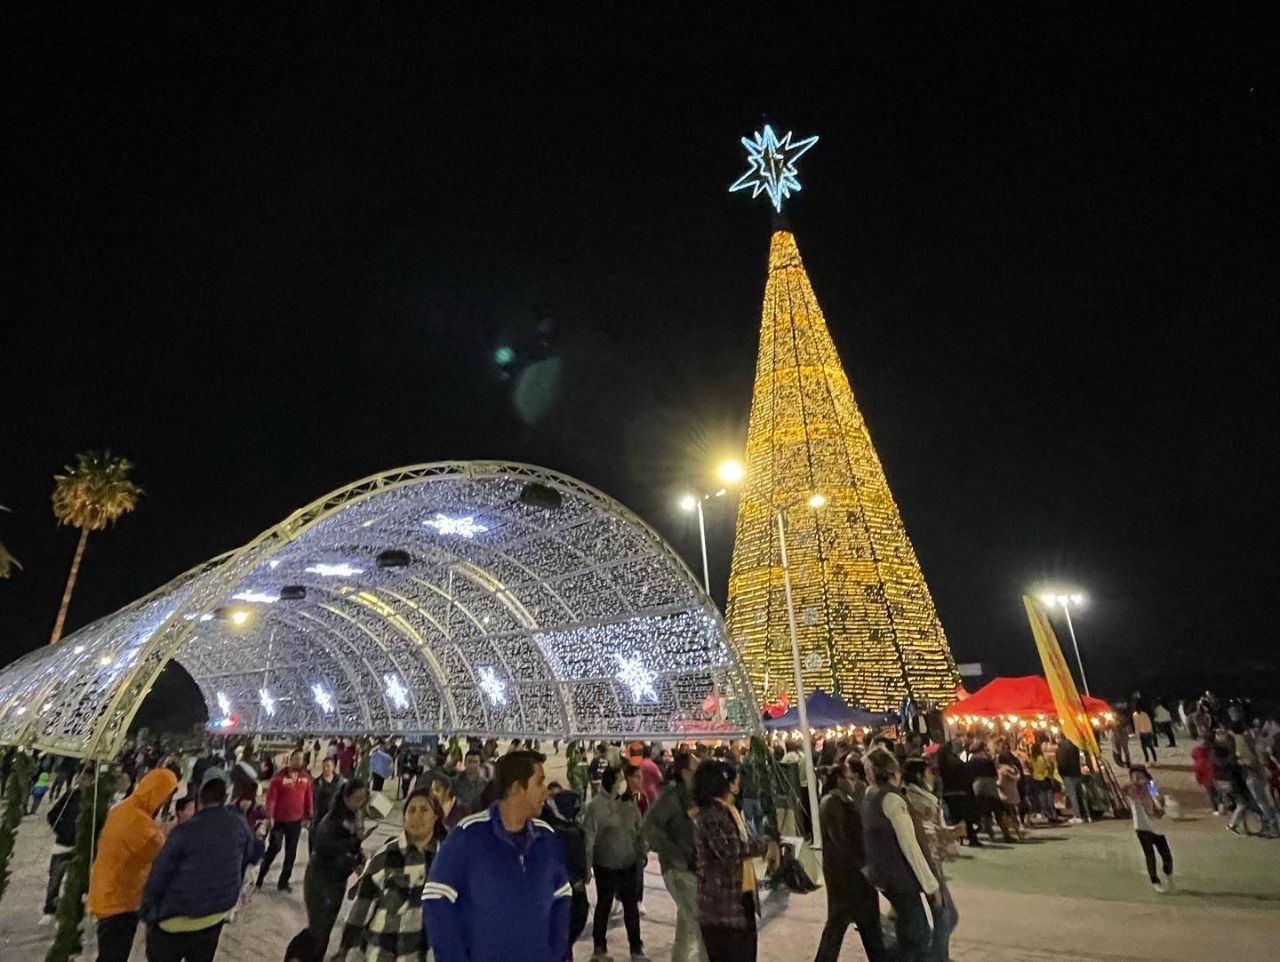 En el recinto se encuentra la pista de hielo gratuita, el árbol monumental, la villa navideña, venta de regalos y amenidades infantiles todos los días